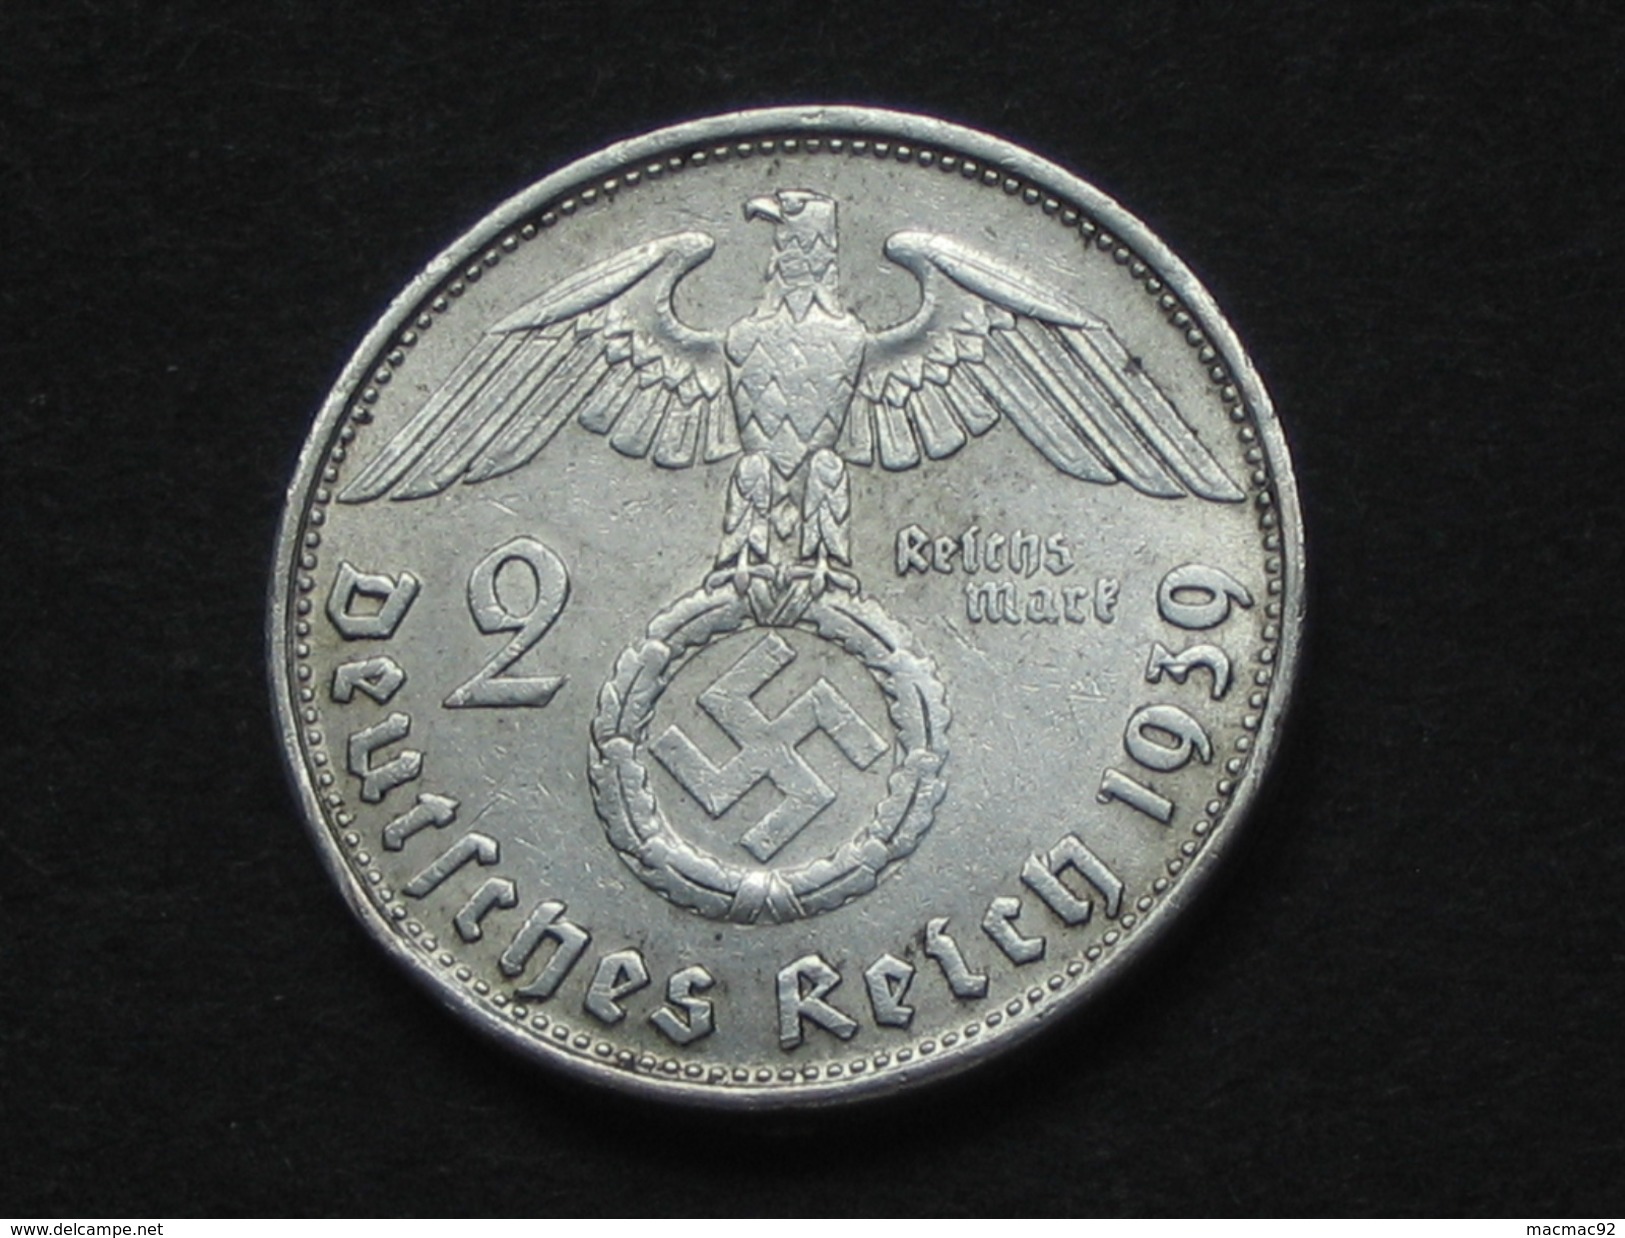 2 Deutches Reichsmark 1939 B - Allemagne - Third Reich **** EN ACHAT IMMEDIAT **** - 2 Reichsmark